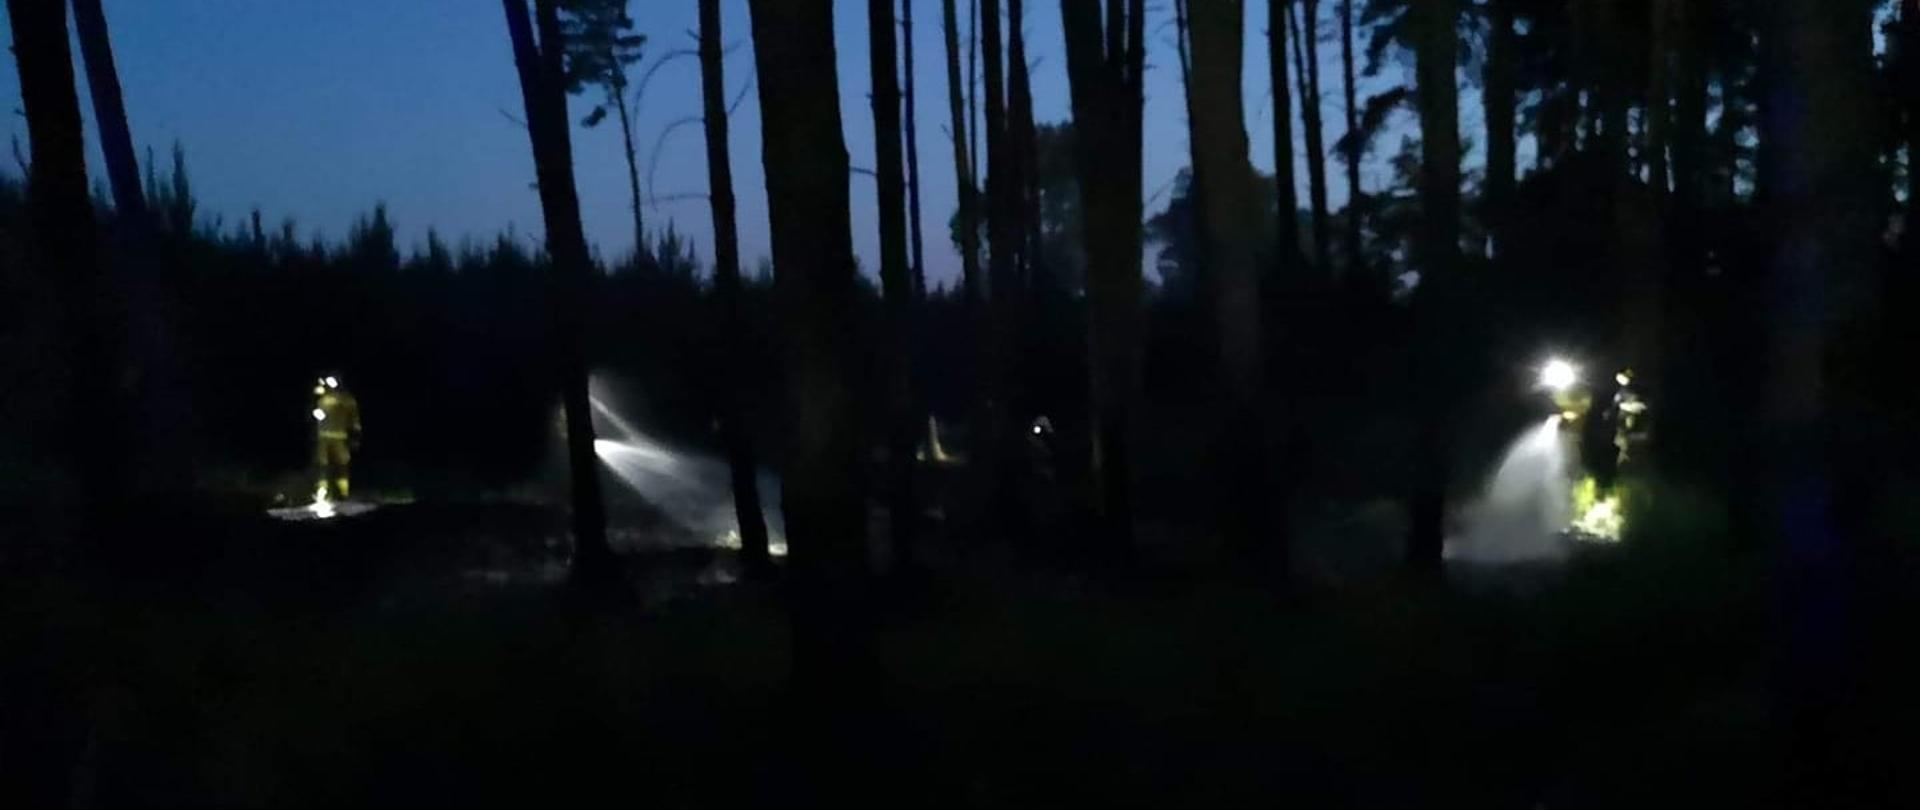 Działania gaśnicze w porze nocnej. Strażacy dogaszają pogorzelisko oświetlając teren latarkami na hełmach. 